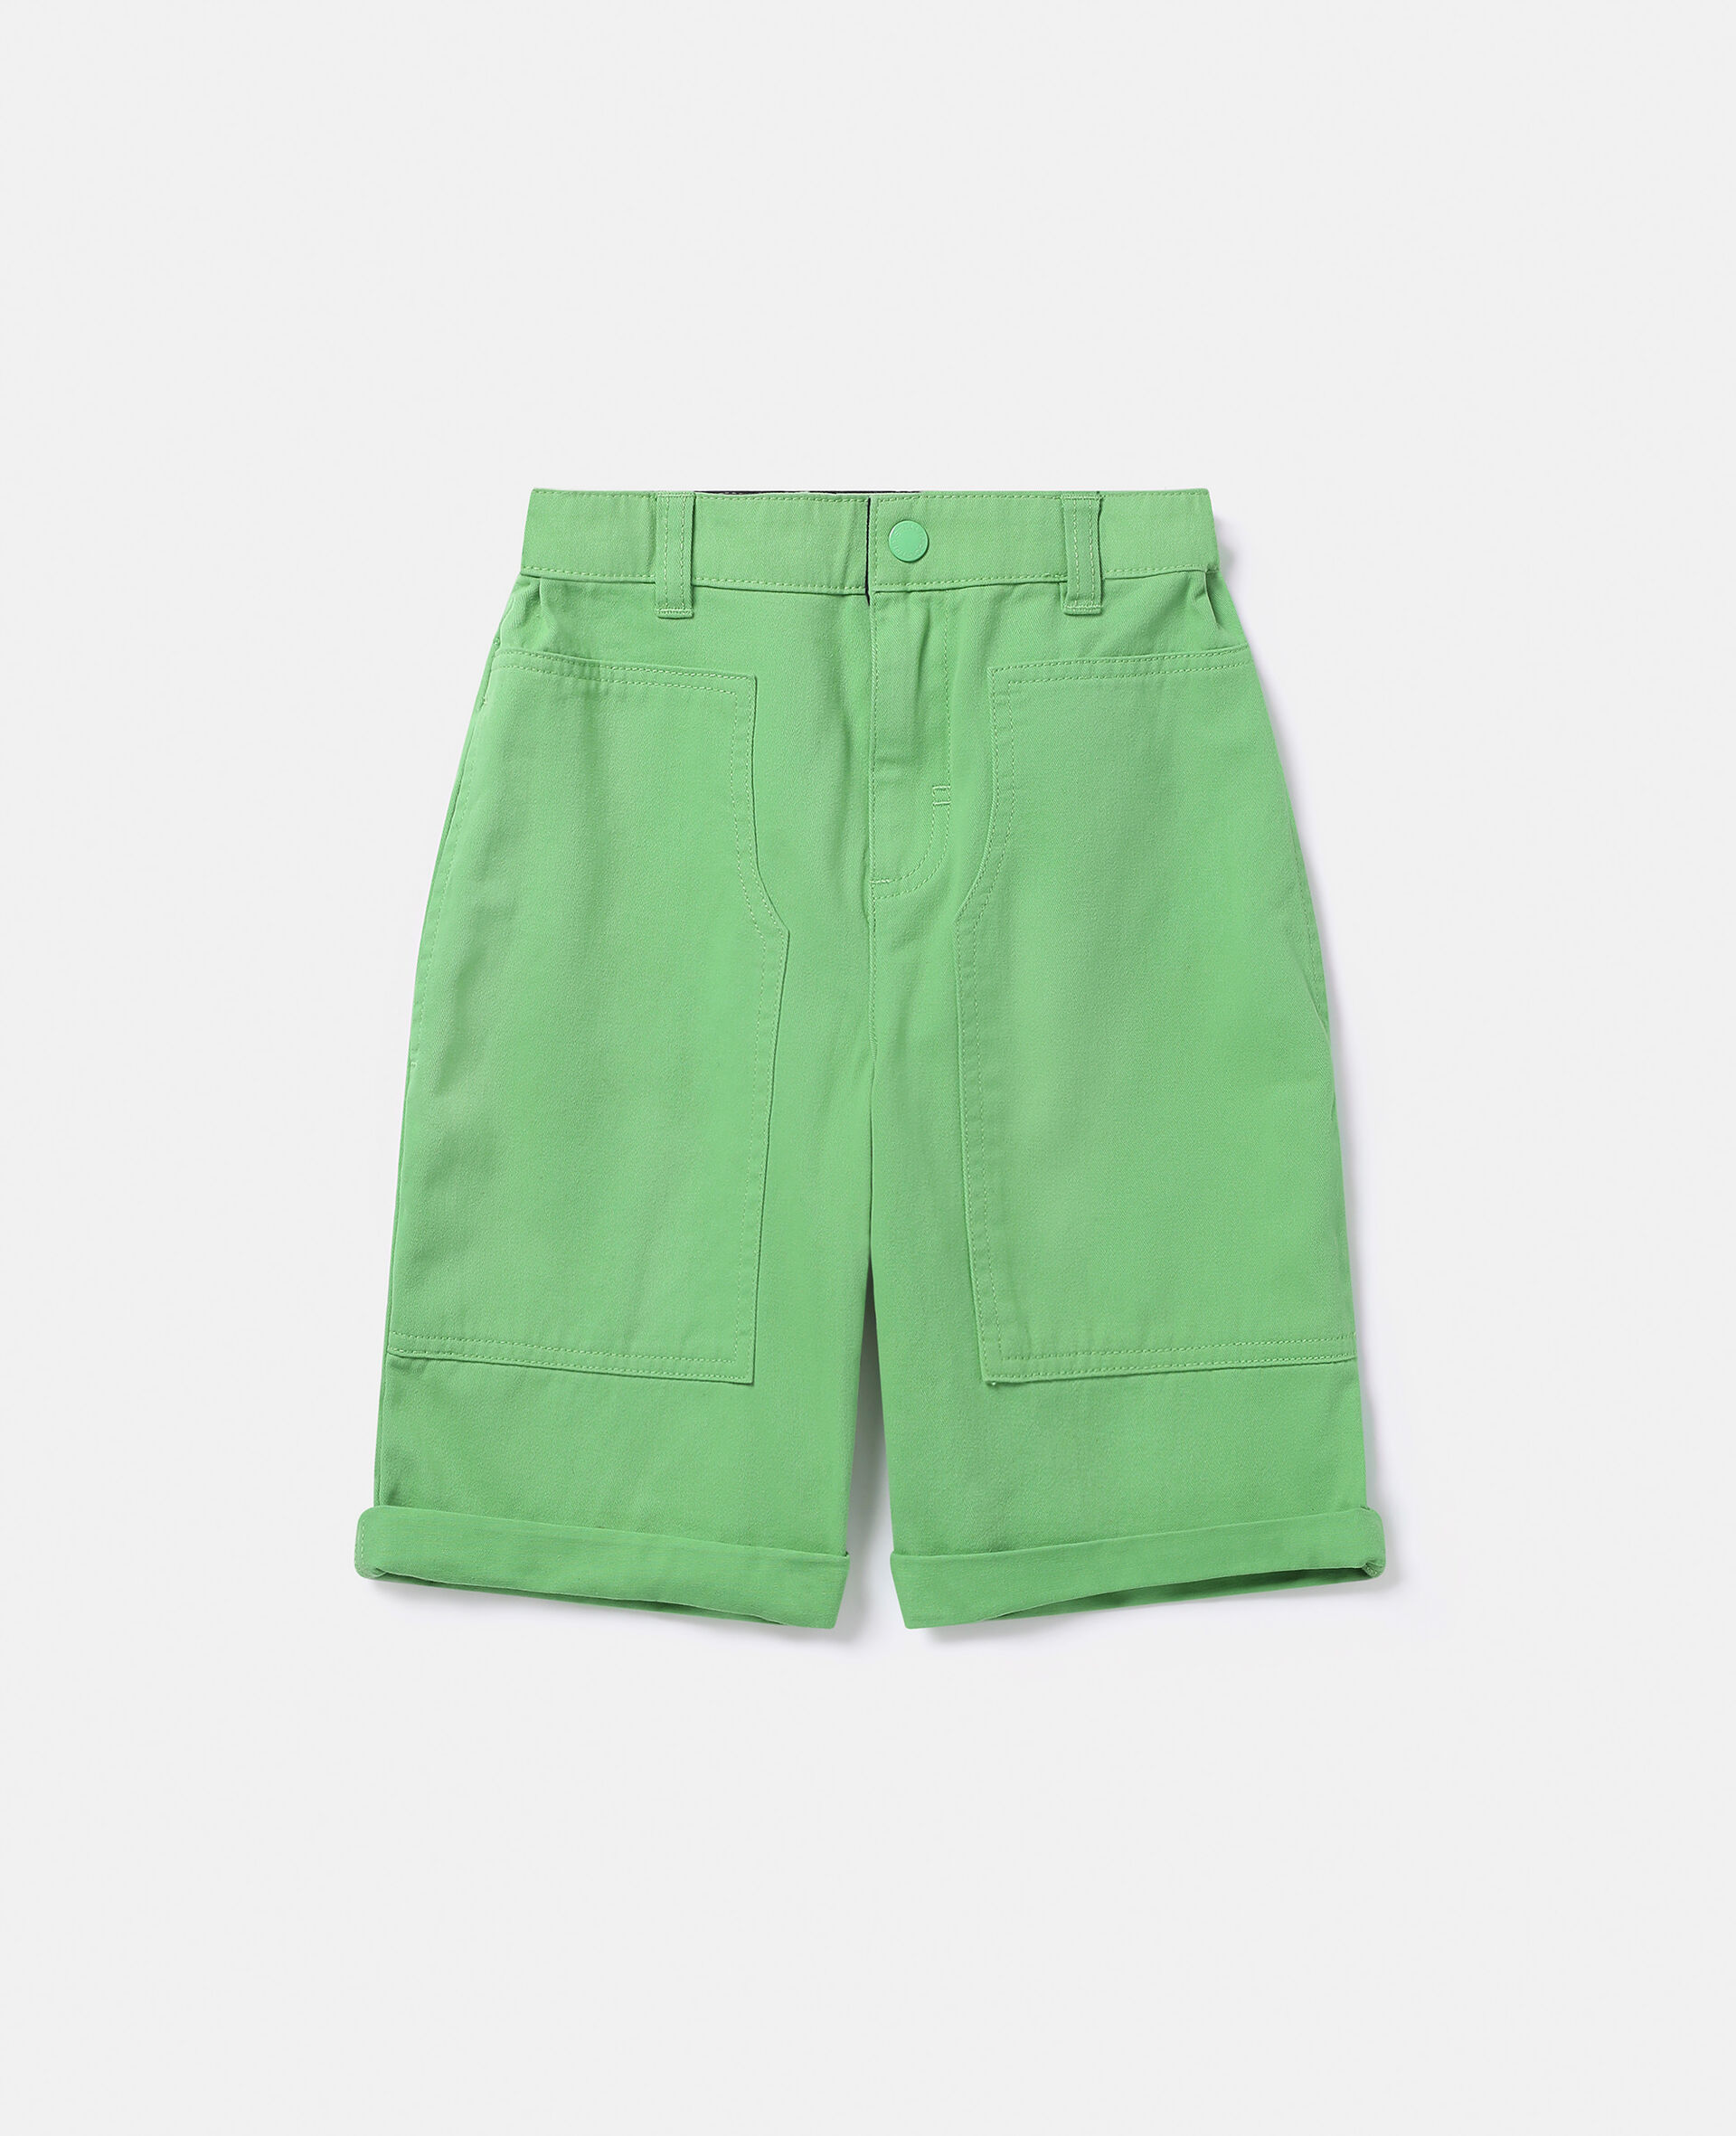 Cargo Shorts-绿色-large image number 0